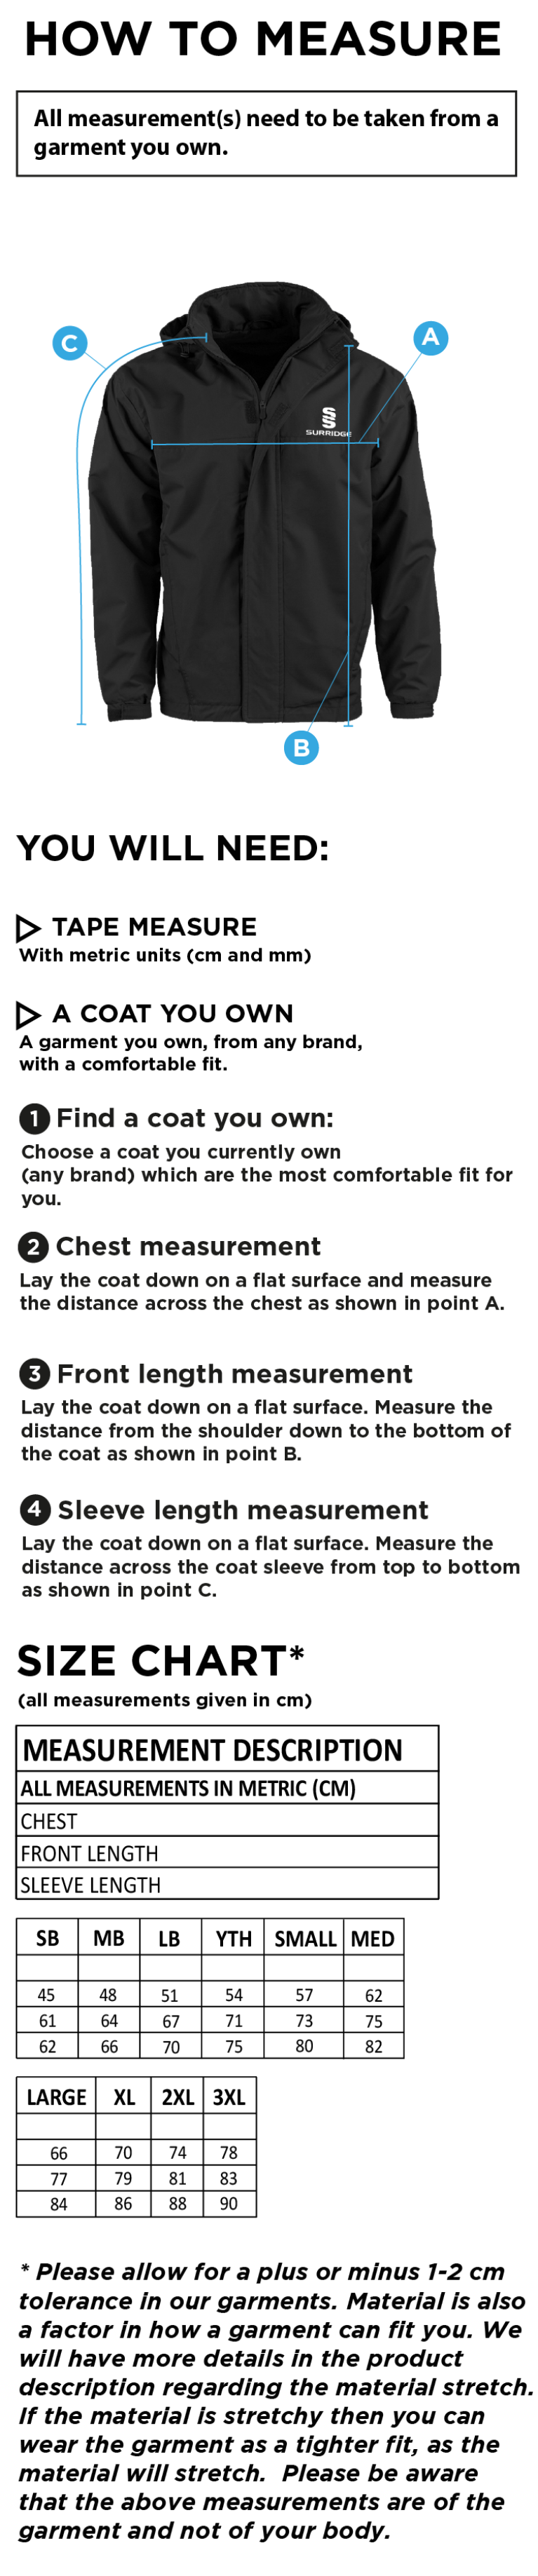 Women's Dual Fleece Lined Jacket : Navy - Size Guide